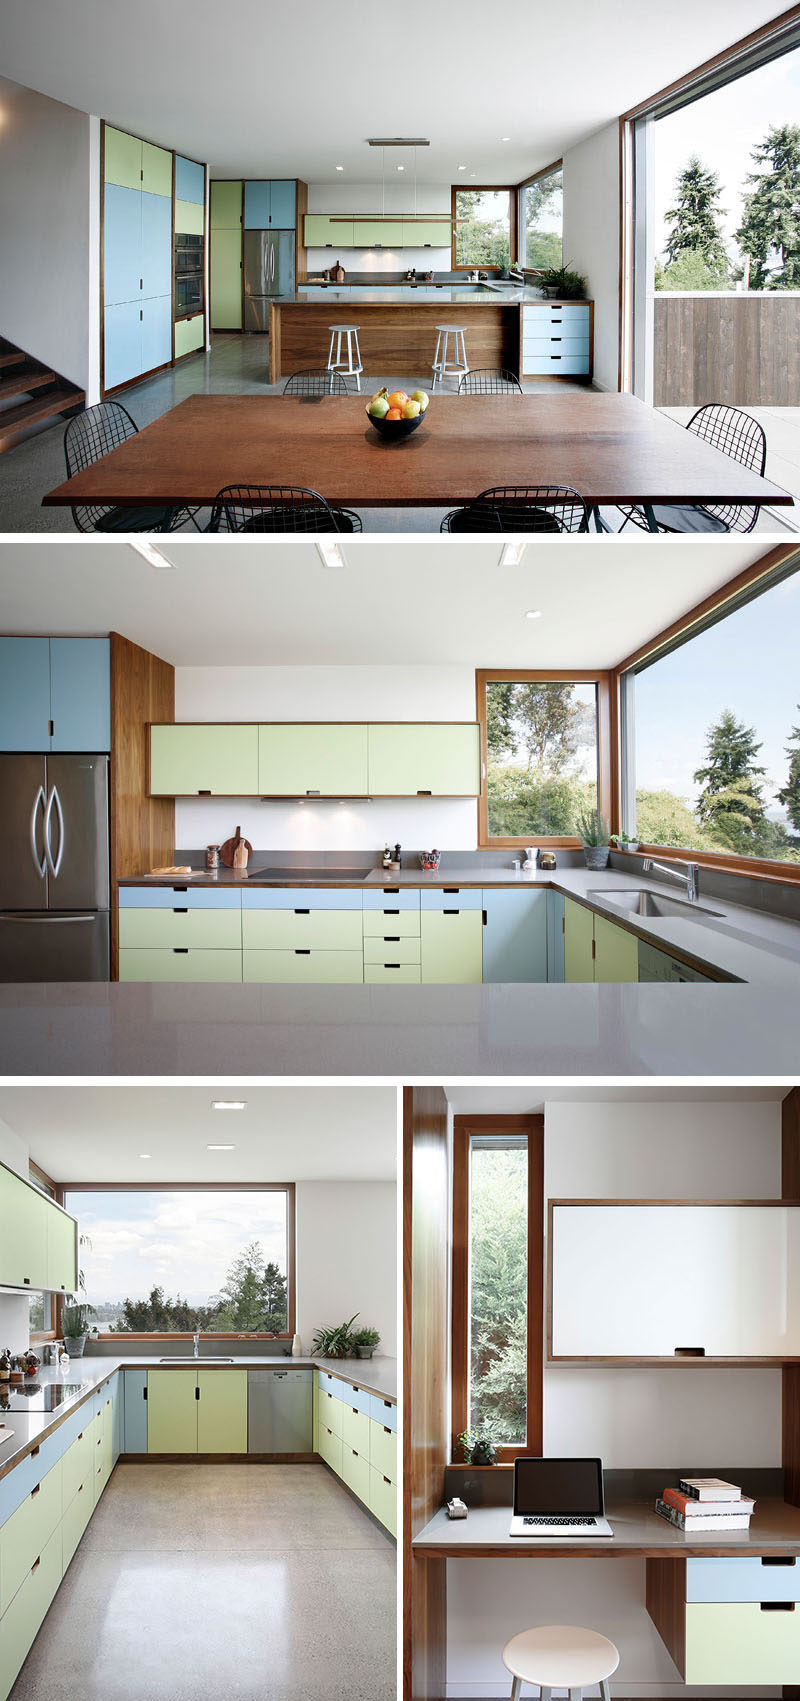 Цвет был добавлен в интерьер этого современного дома, где дизайнеры использовали пастельные синие и зеленые фасады шкафов, которые использовали деревянную мебель и оконные рамы. #ColorfulKitchen #KitchenDesign